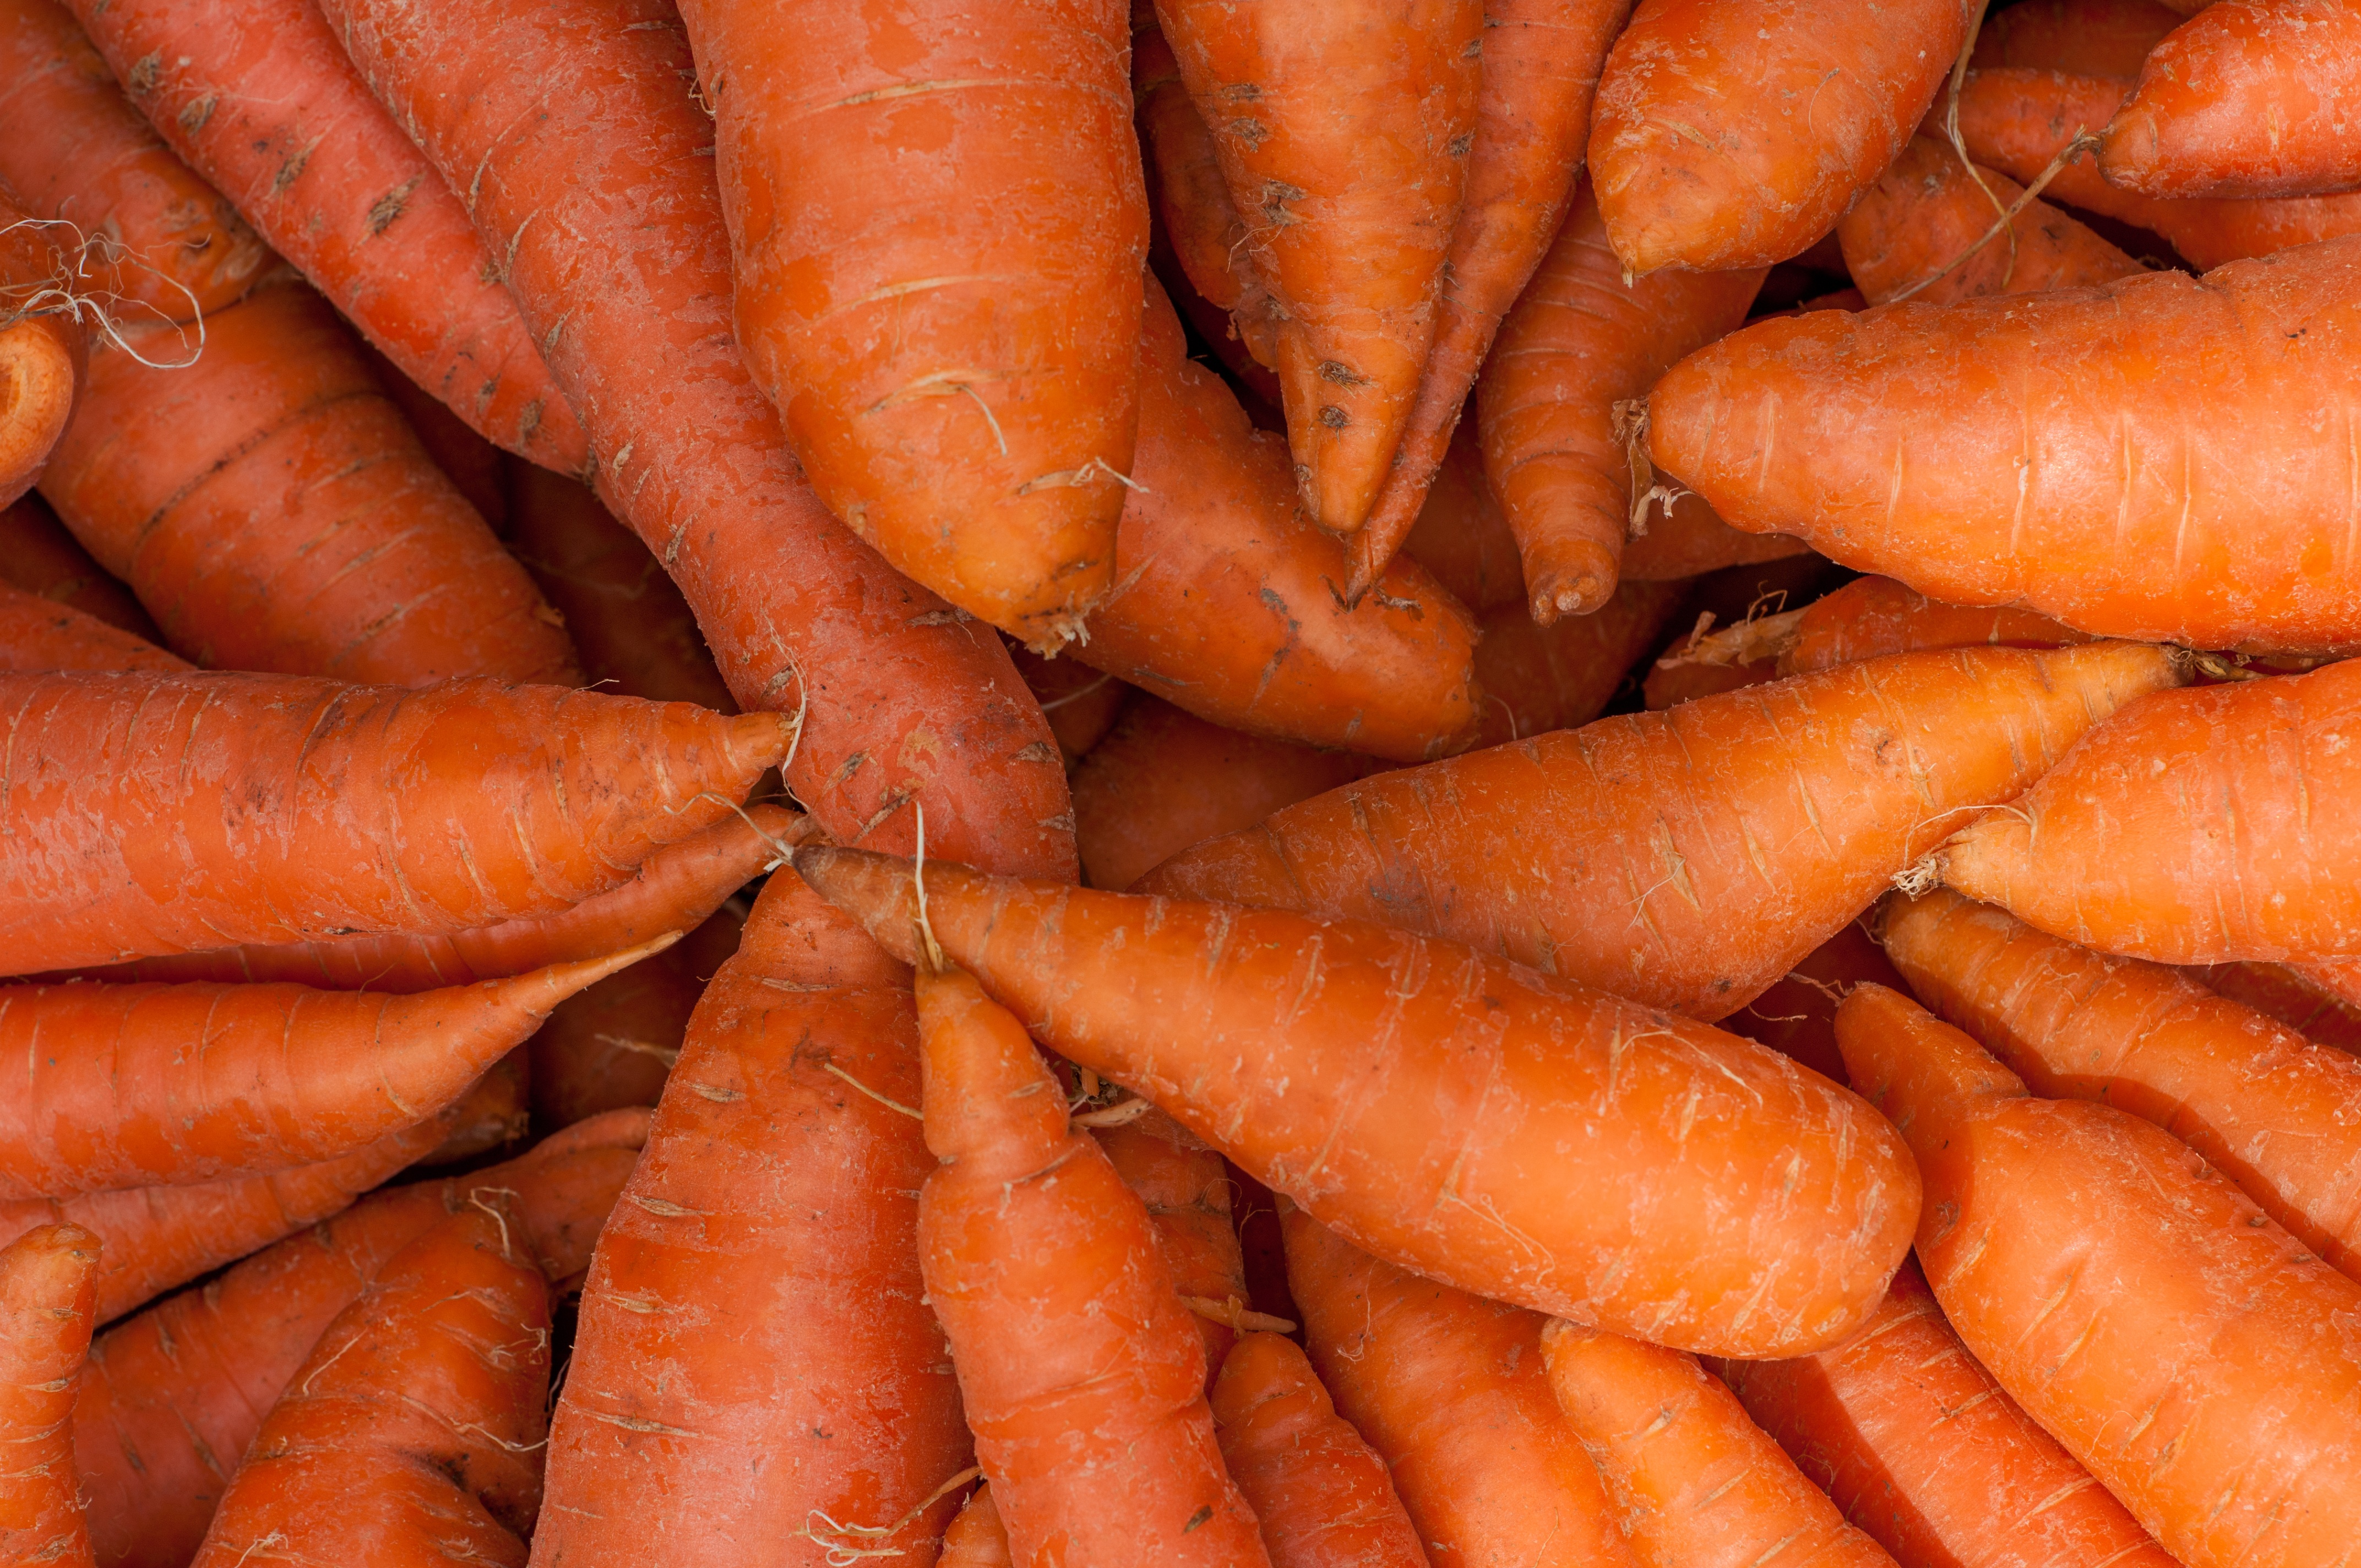 Химический состав и калорийность моркови: почему это важно знать? как есть овощ, чтобы усвоился витамин а?